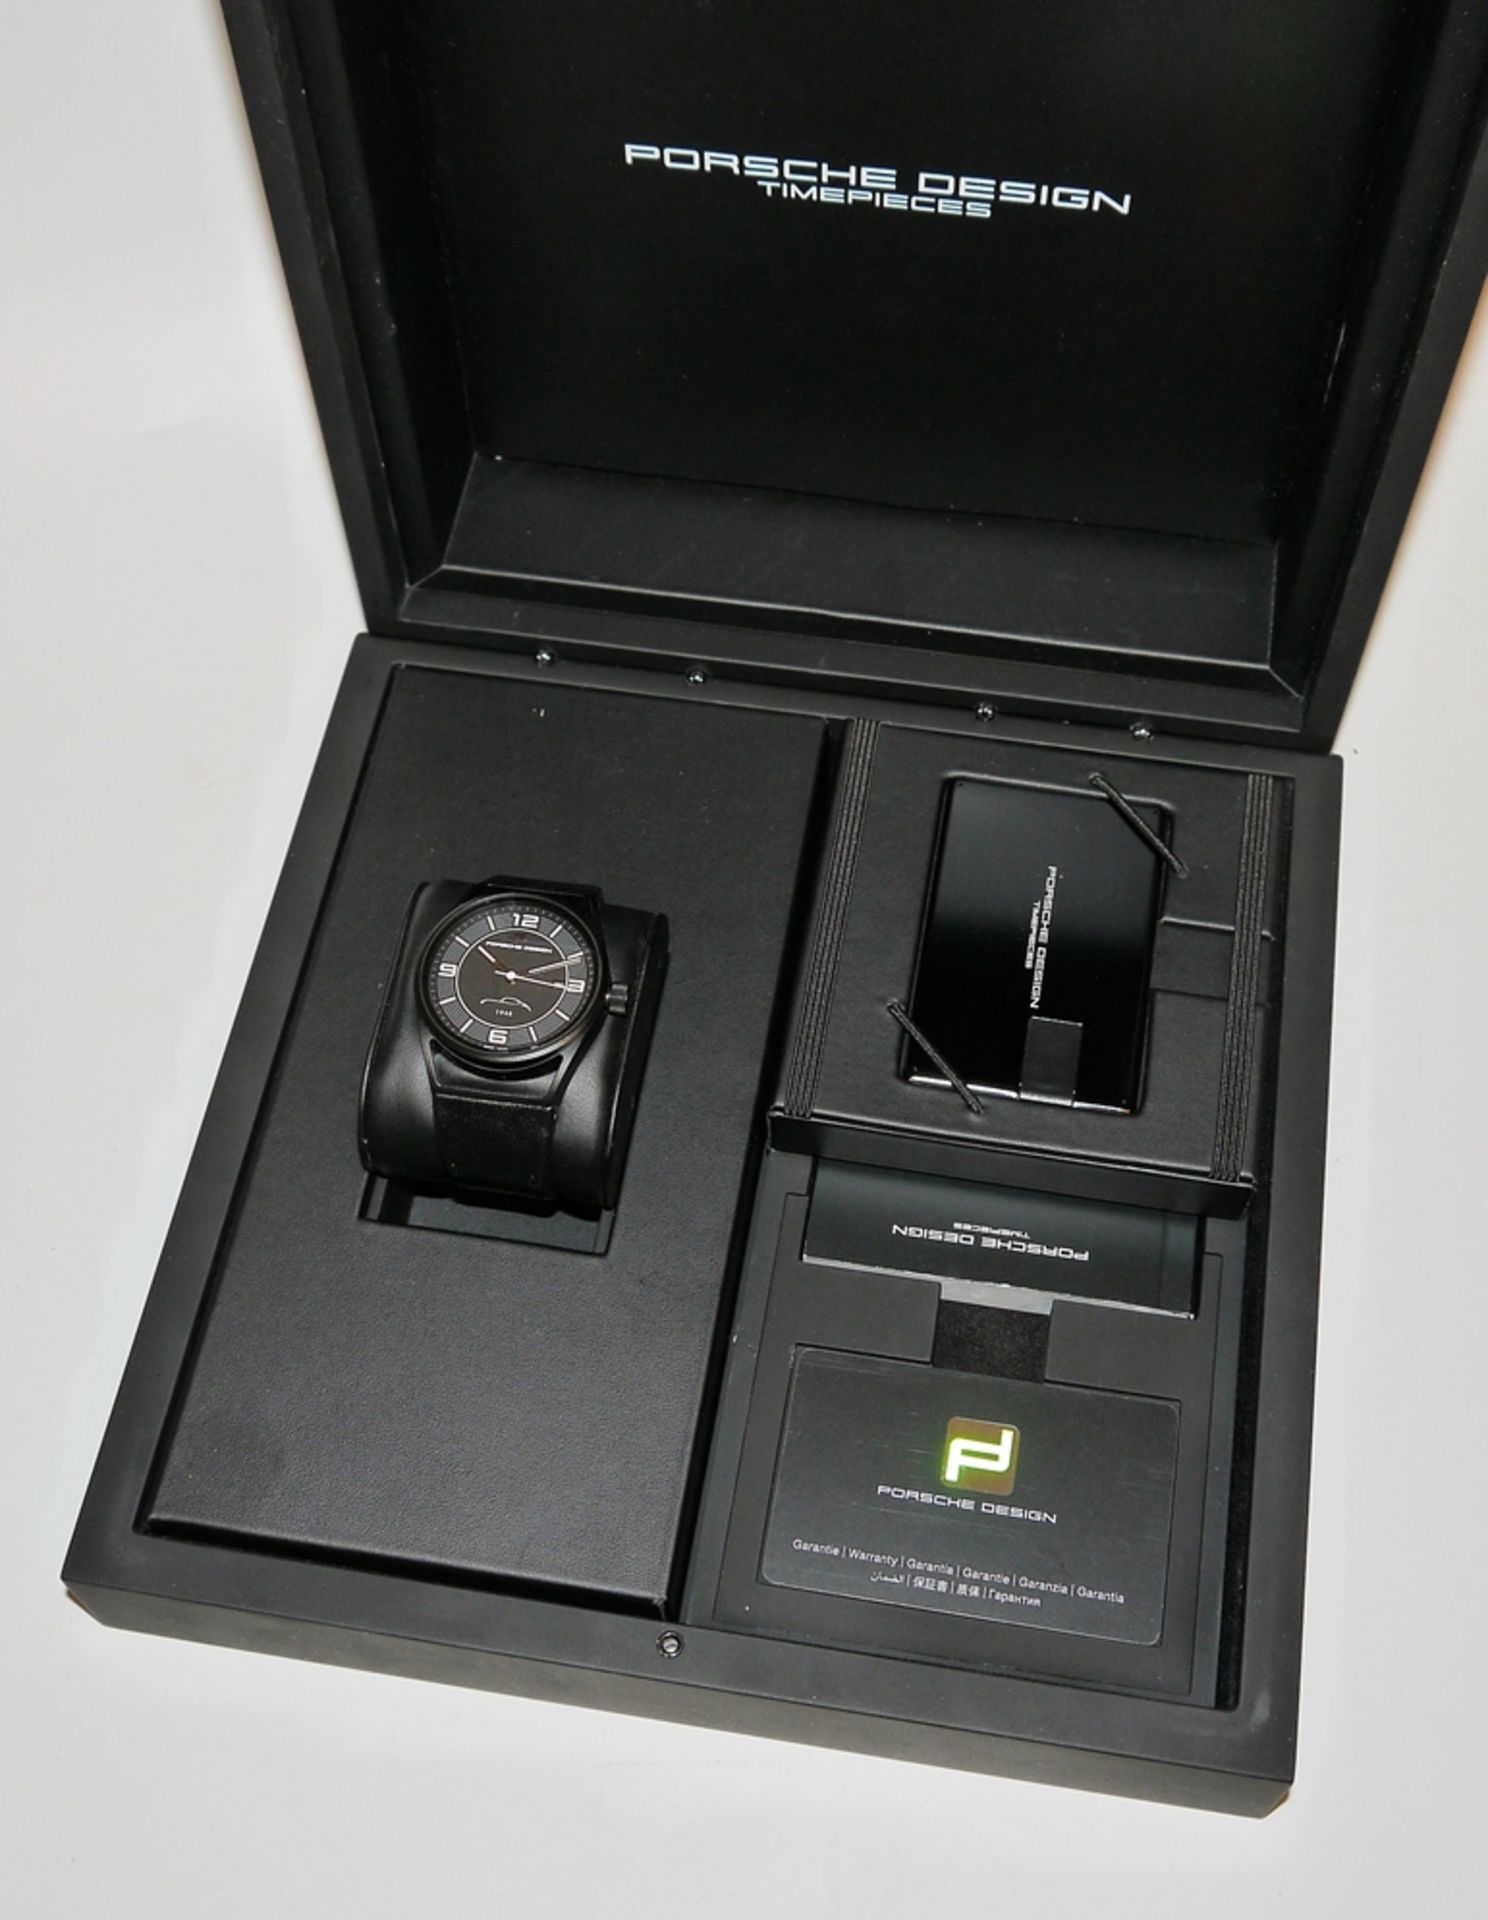 Porsche Design 1919 Datetimer Eternity, limited edition men's wristwatch with accessories